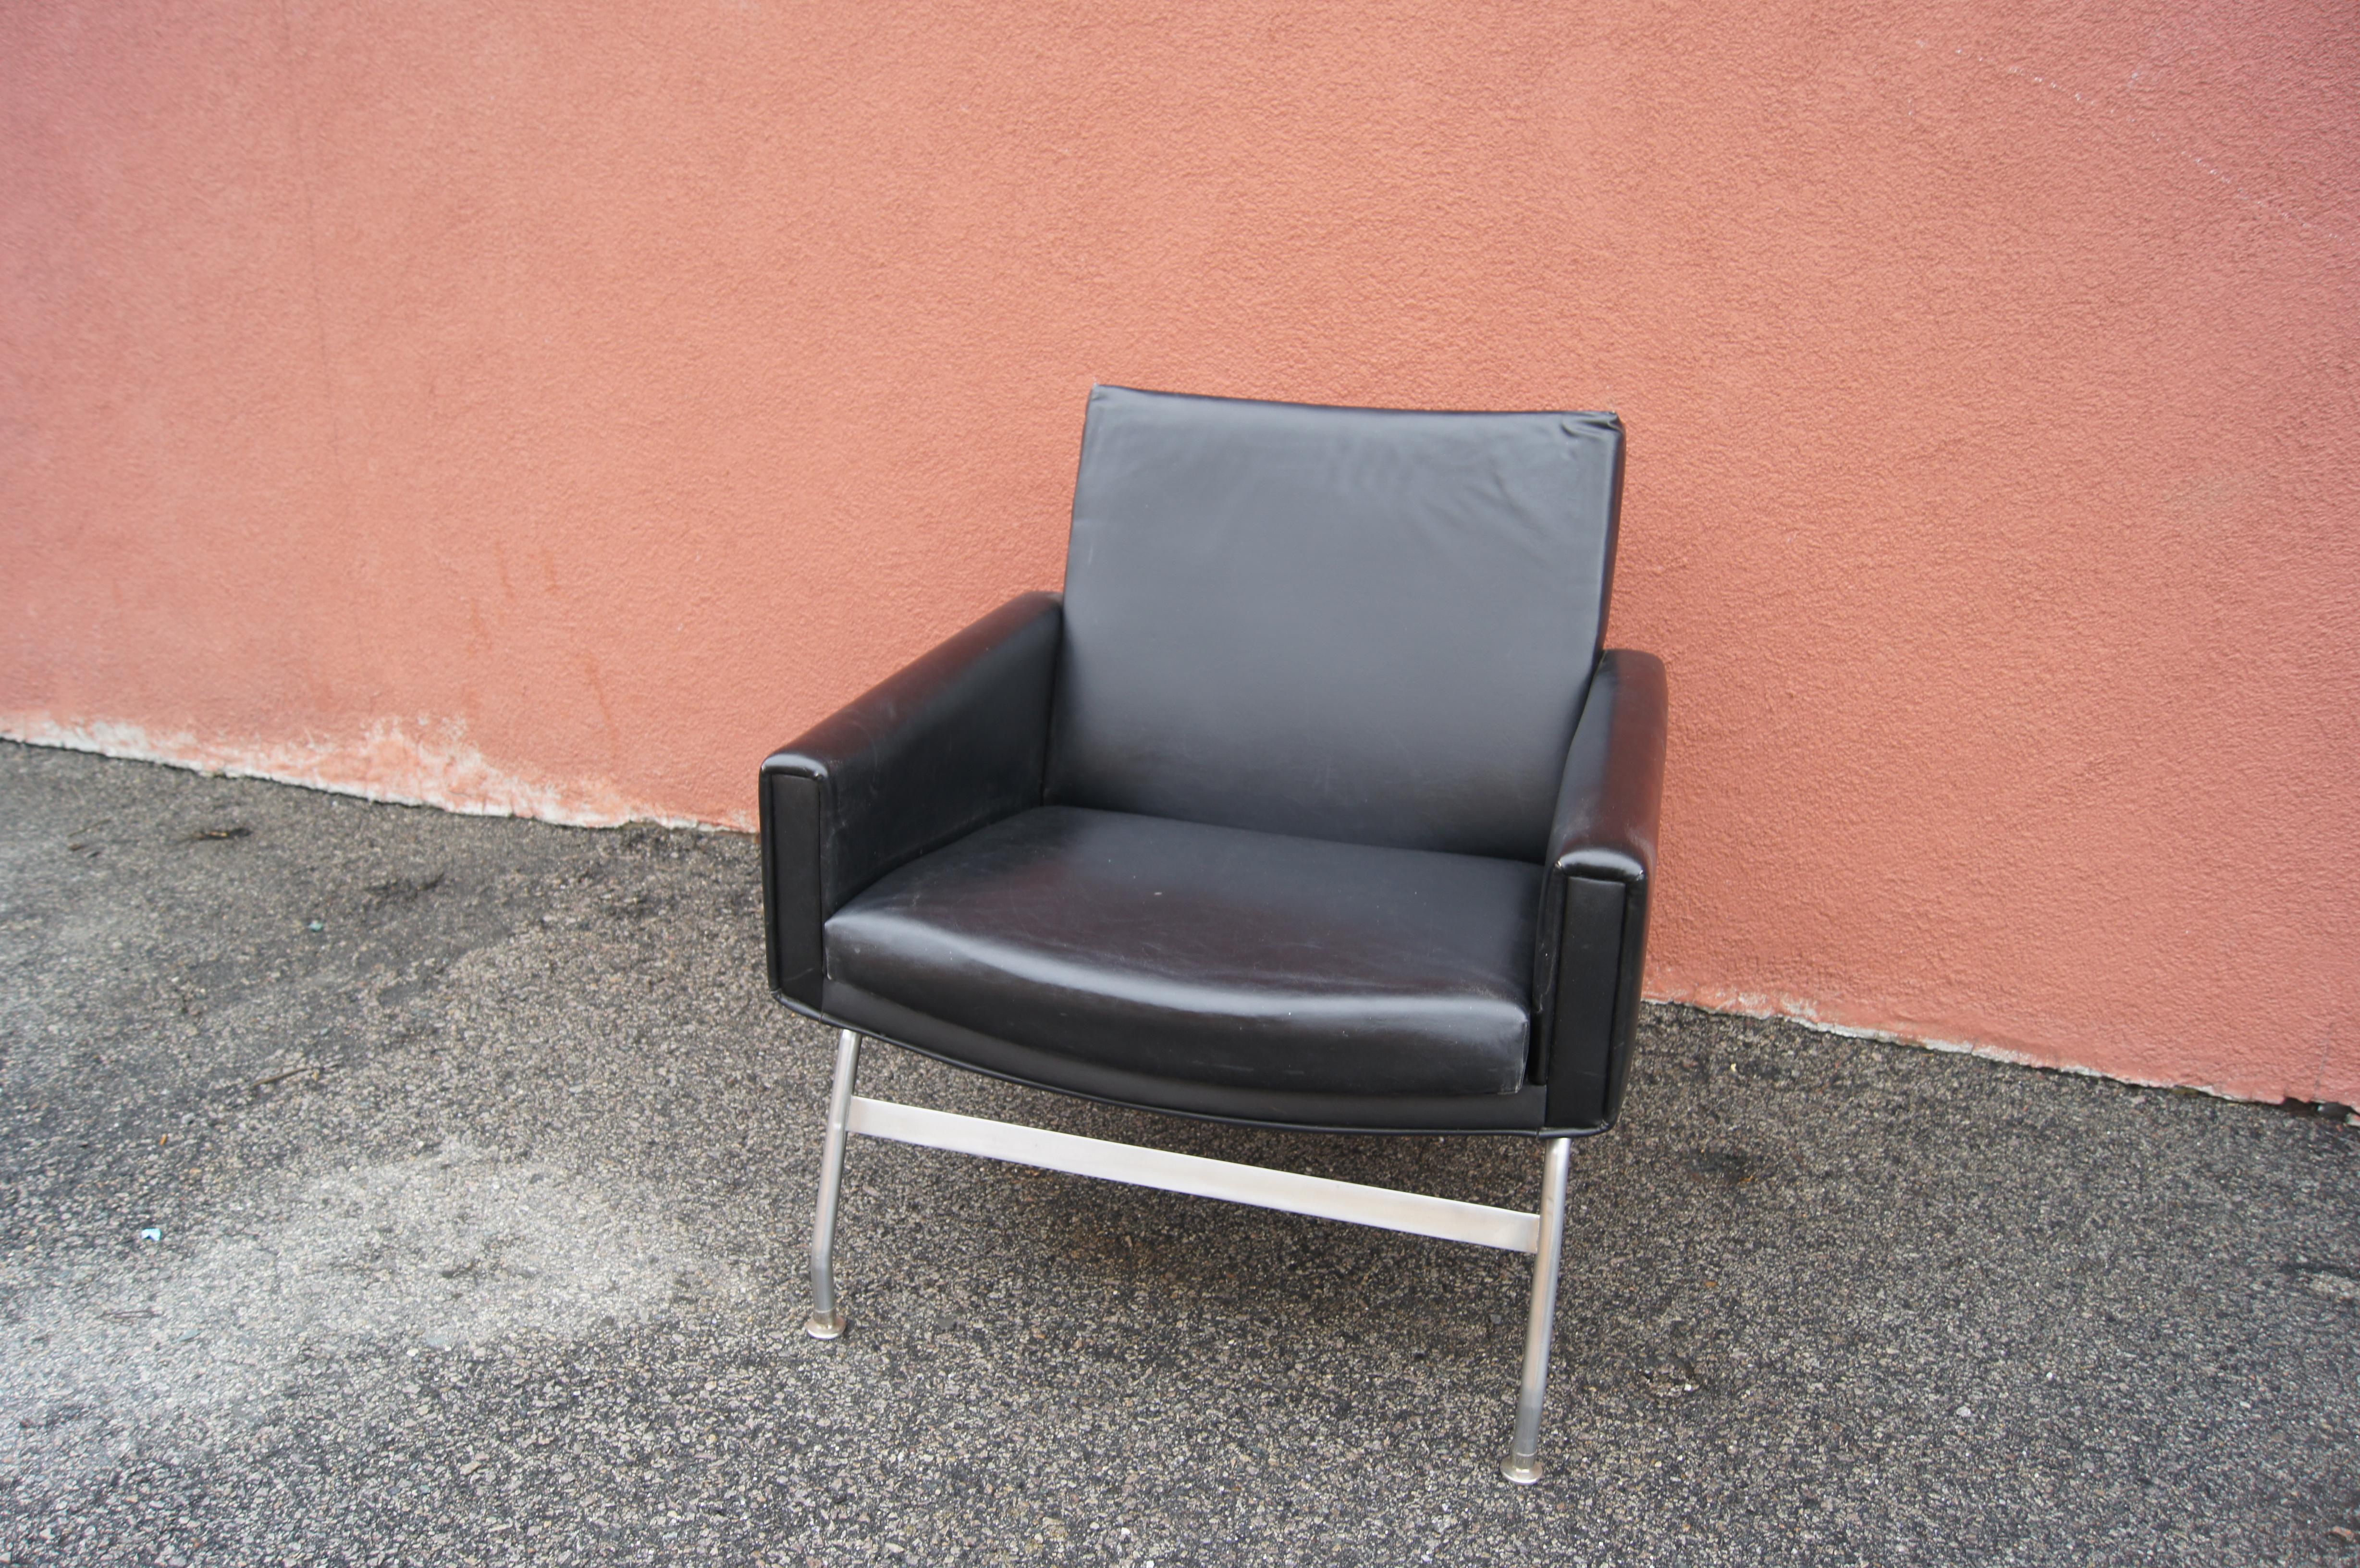 Fabriqué à la fin des années 1950 par Henry Rolschau Møbler à Steele, ce fauteuil moderne danois en cuir repose sur une structure en acier. Son assise, son dossier et ses accoudoirs rembourrés sont inclinés pour plus de confort, créant ainsi une